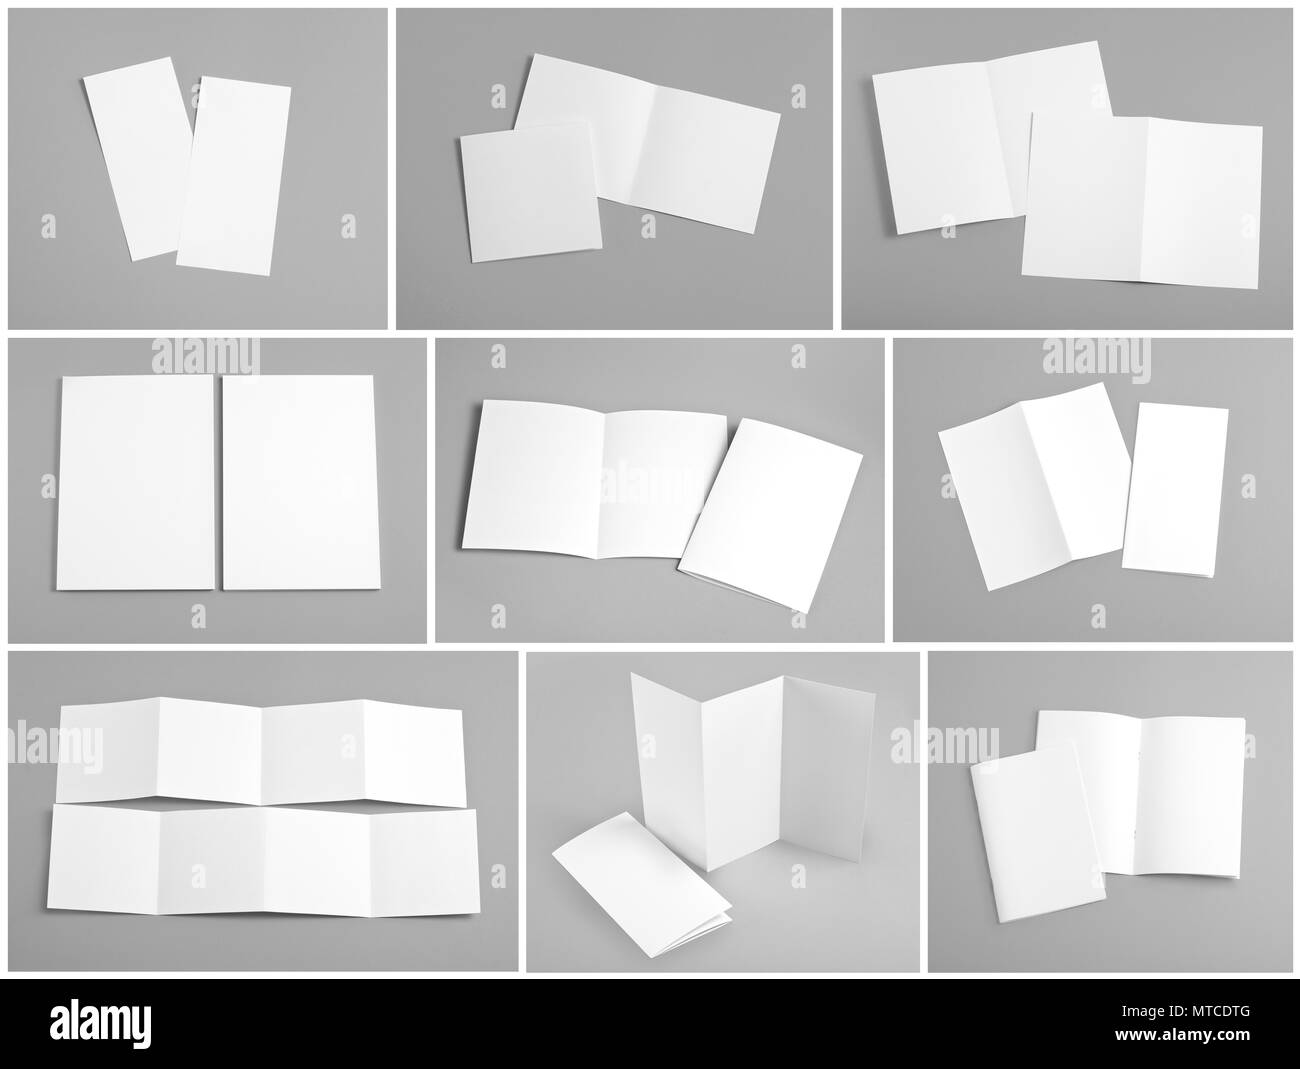 Corporate Identity Design Vorlagen Firma Stil Von Broschuren Leeres Weisses Papier Falten Flyer Stockfotografie Alamy